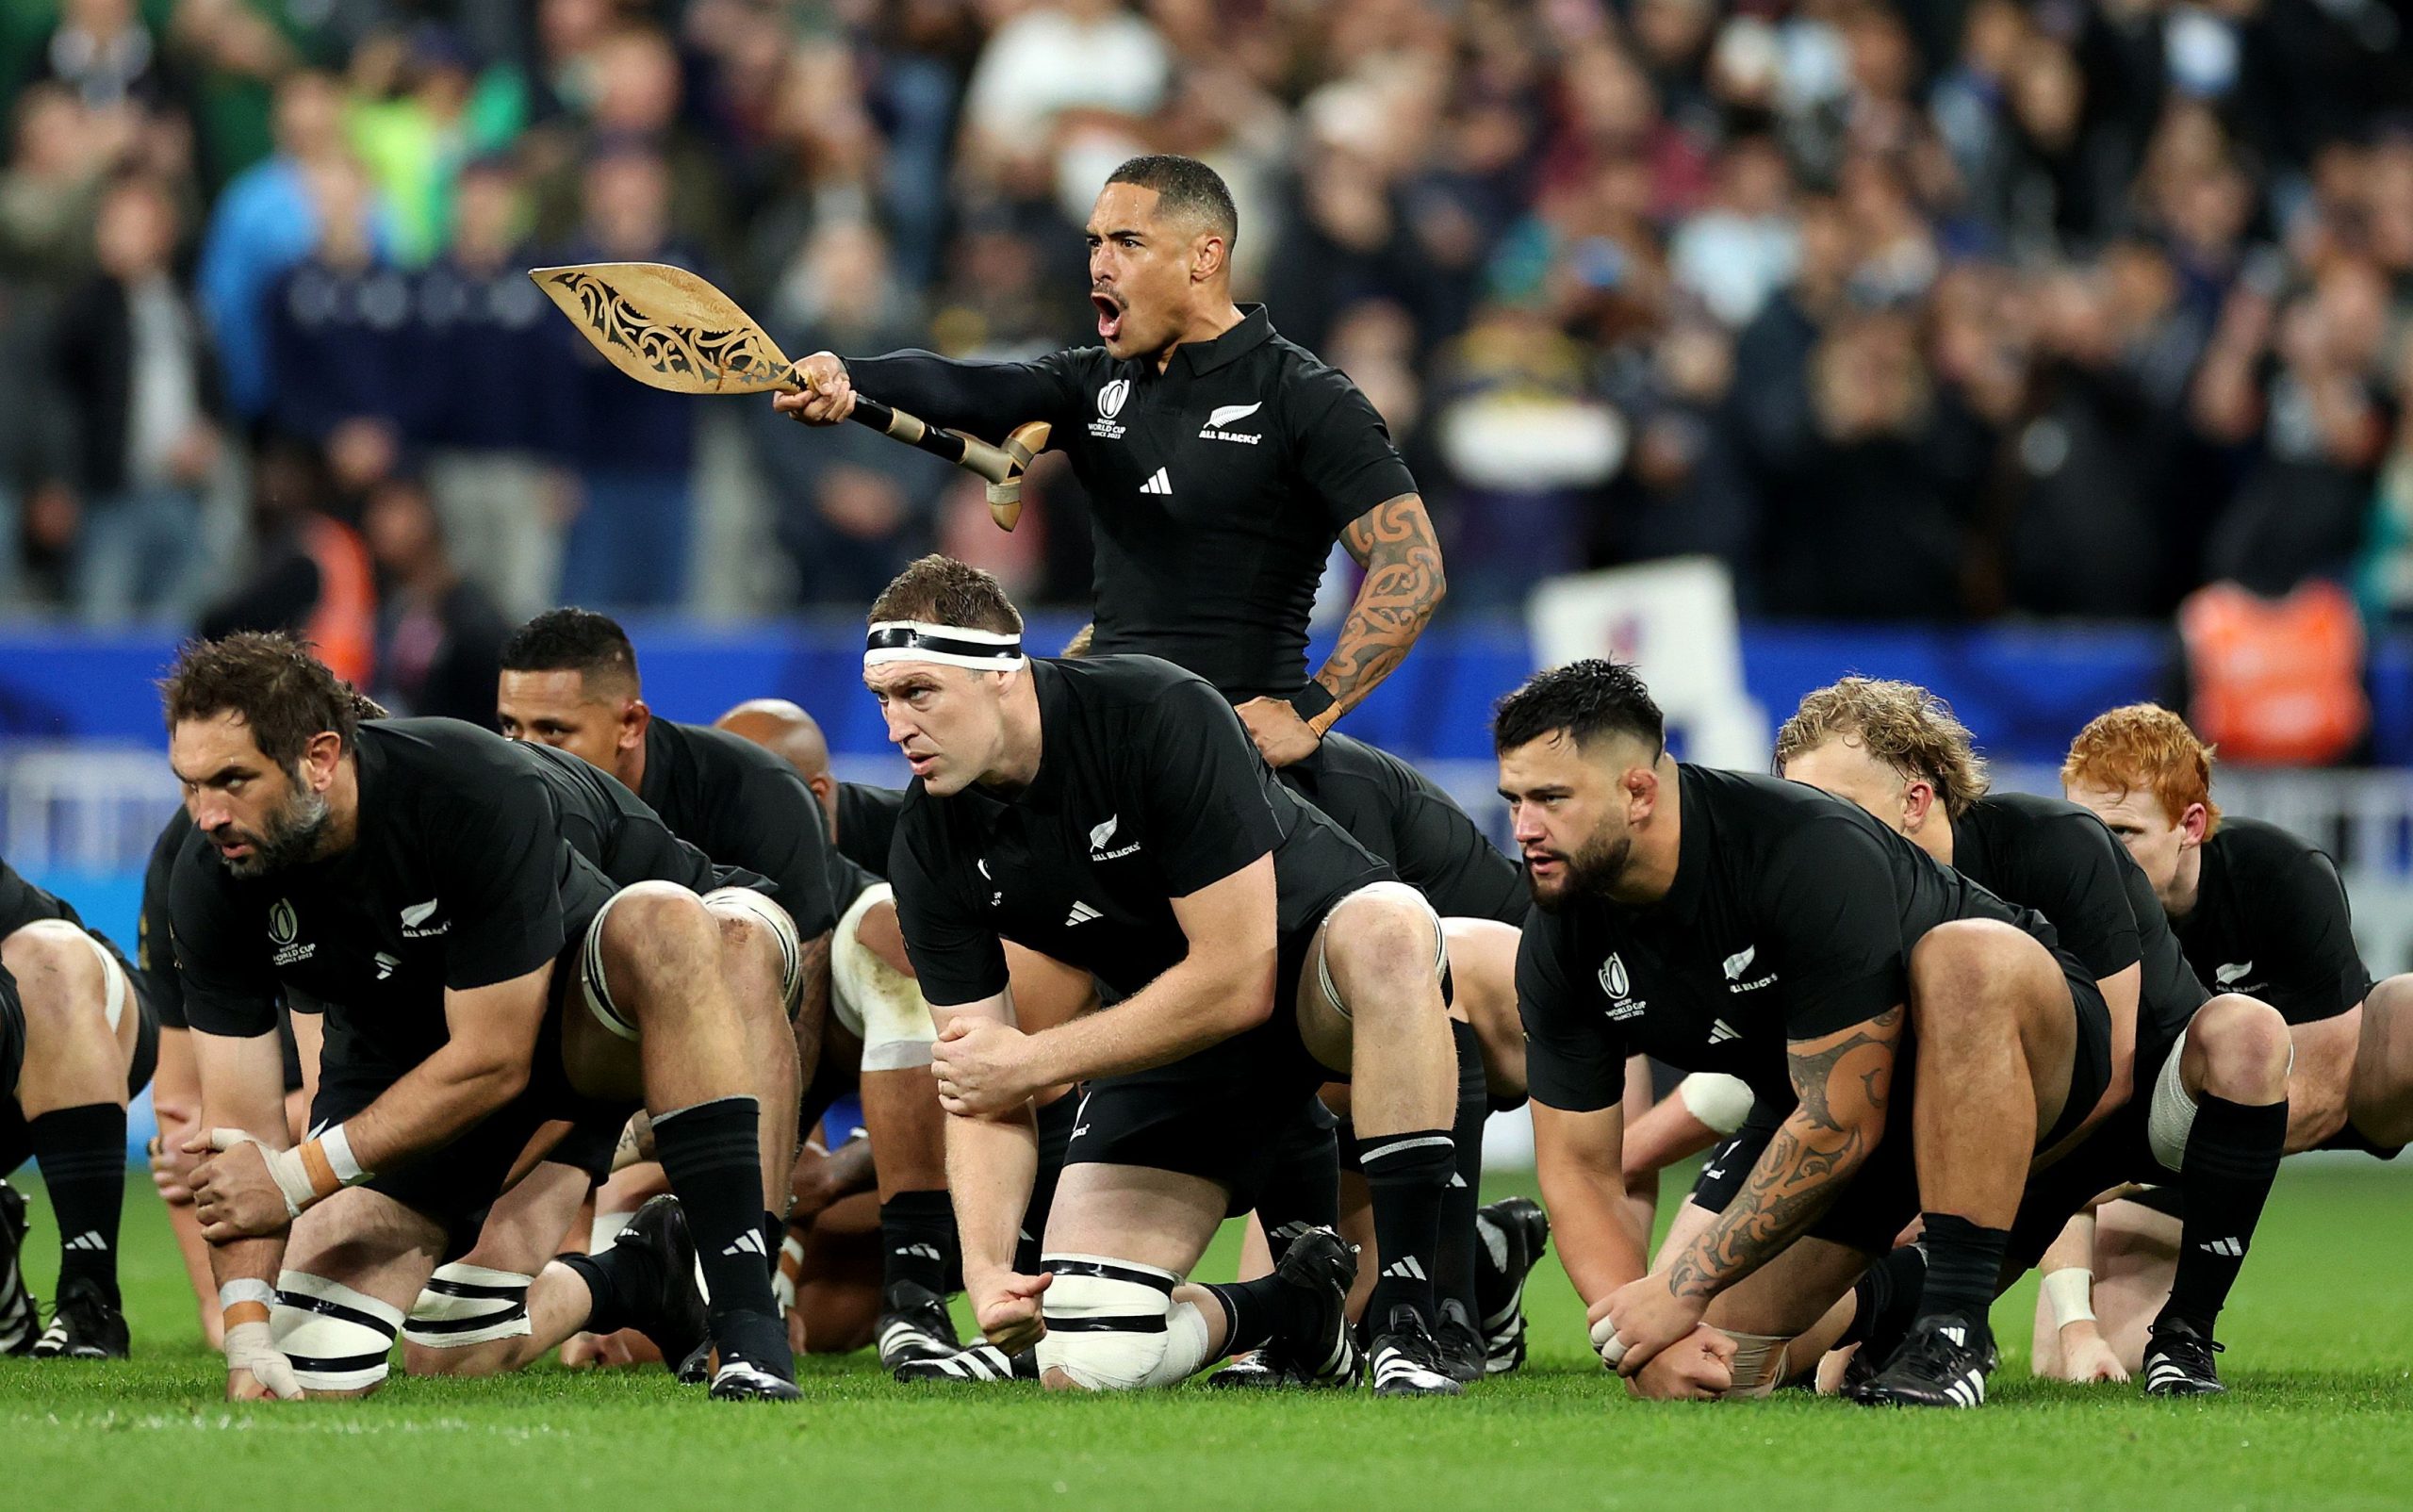 Maior clássico do rugby mundial decidirá o título da Copa do Mundo nesse sábado: All Blacks contra Springboks